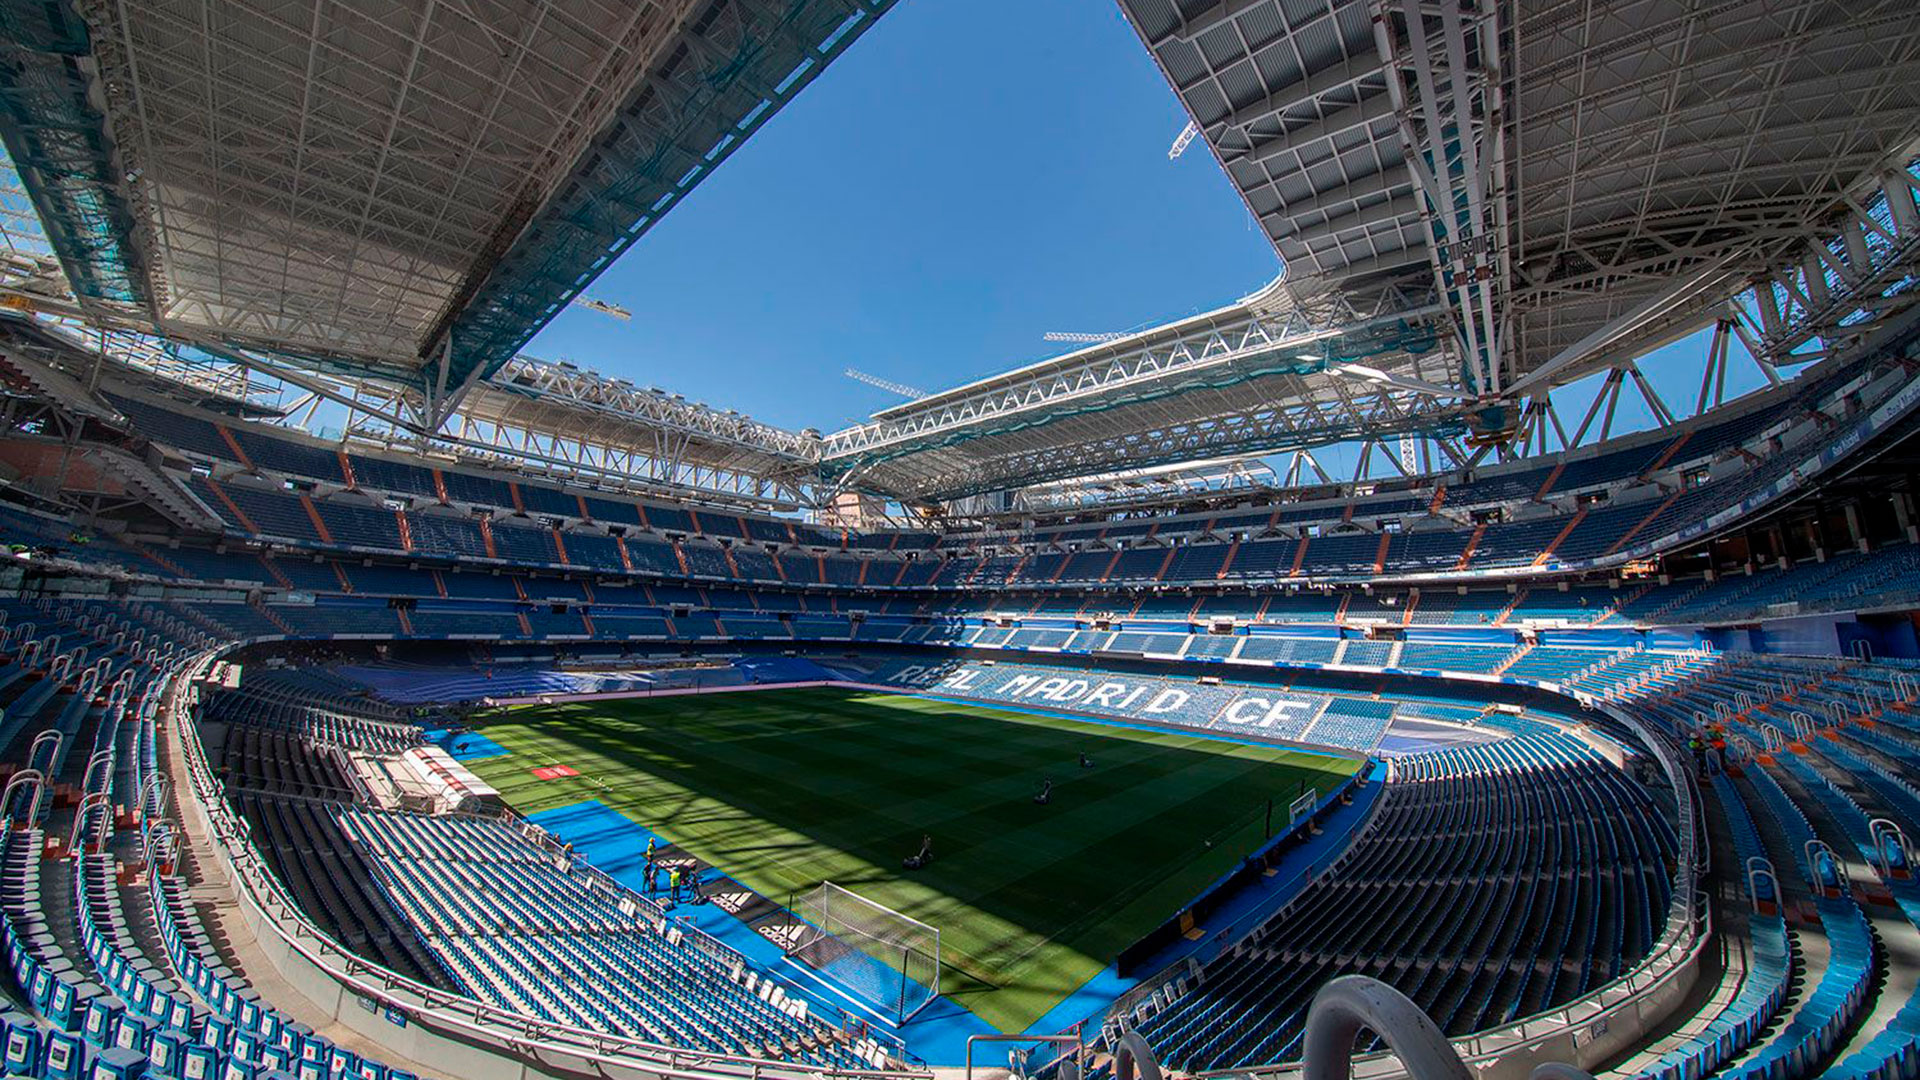 Remodelación Estadio Santiago Bernabéu